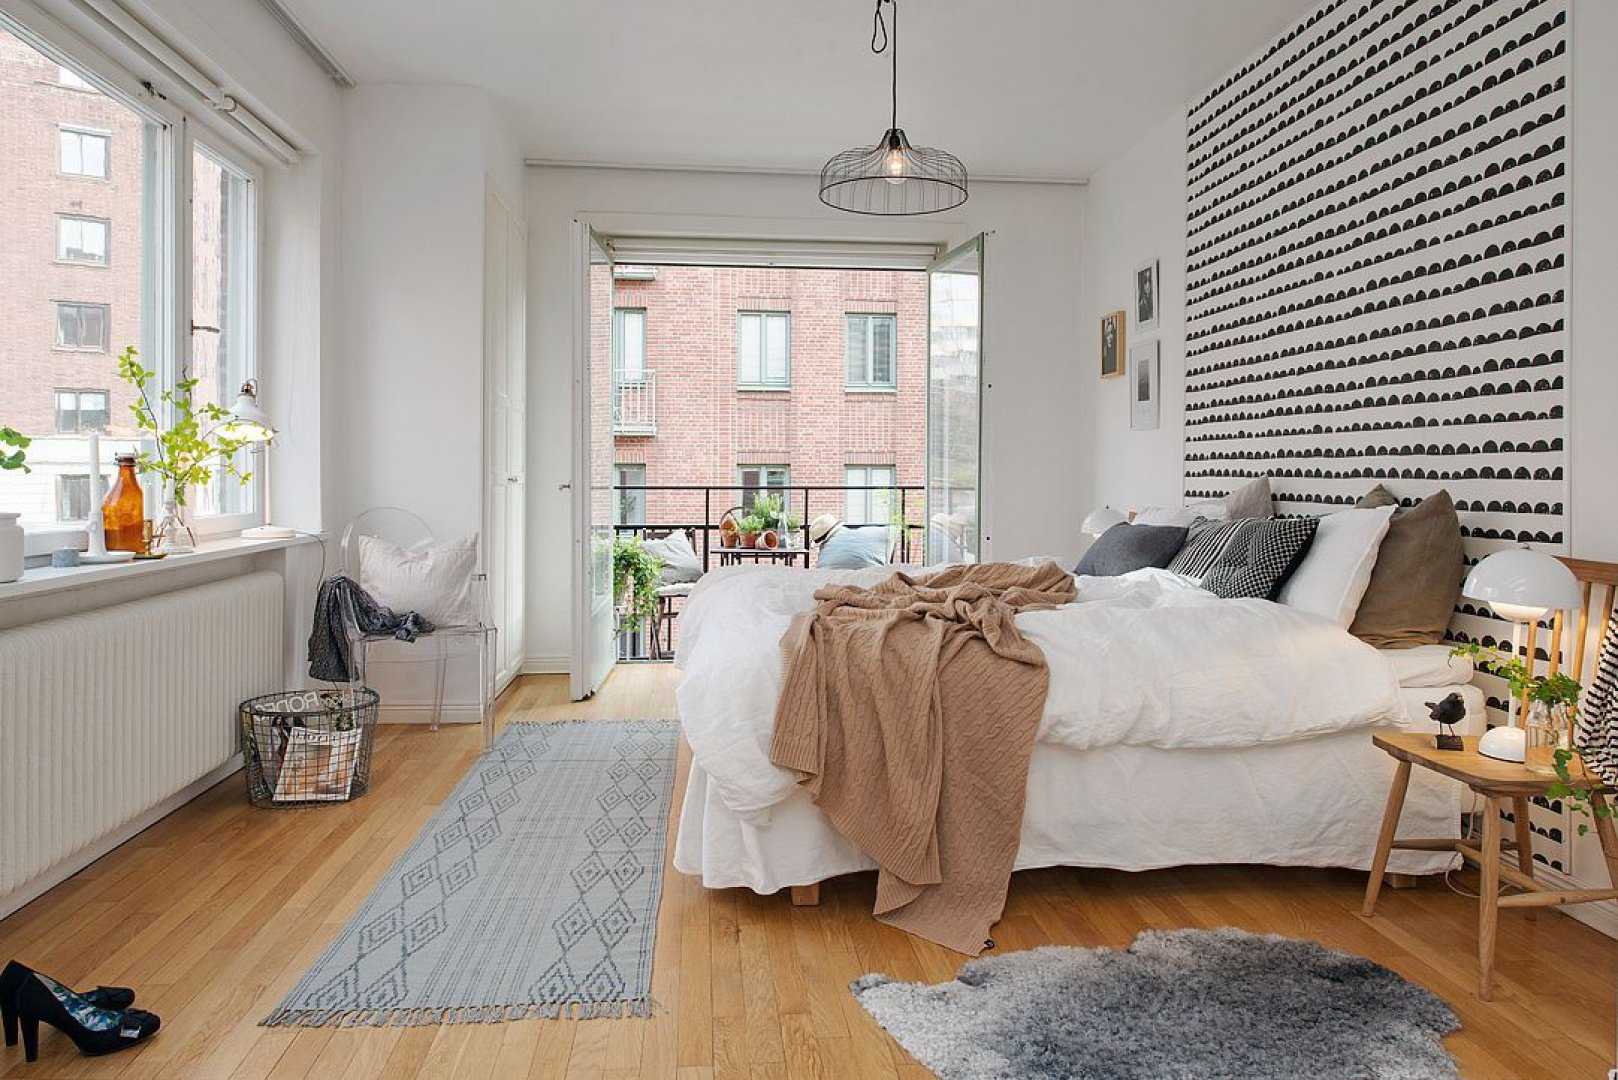 Спальня в скандинавском стиле (80 фото) - дизайн интерьера, идеи ремонта и отделки